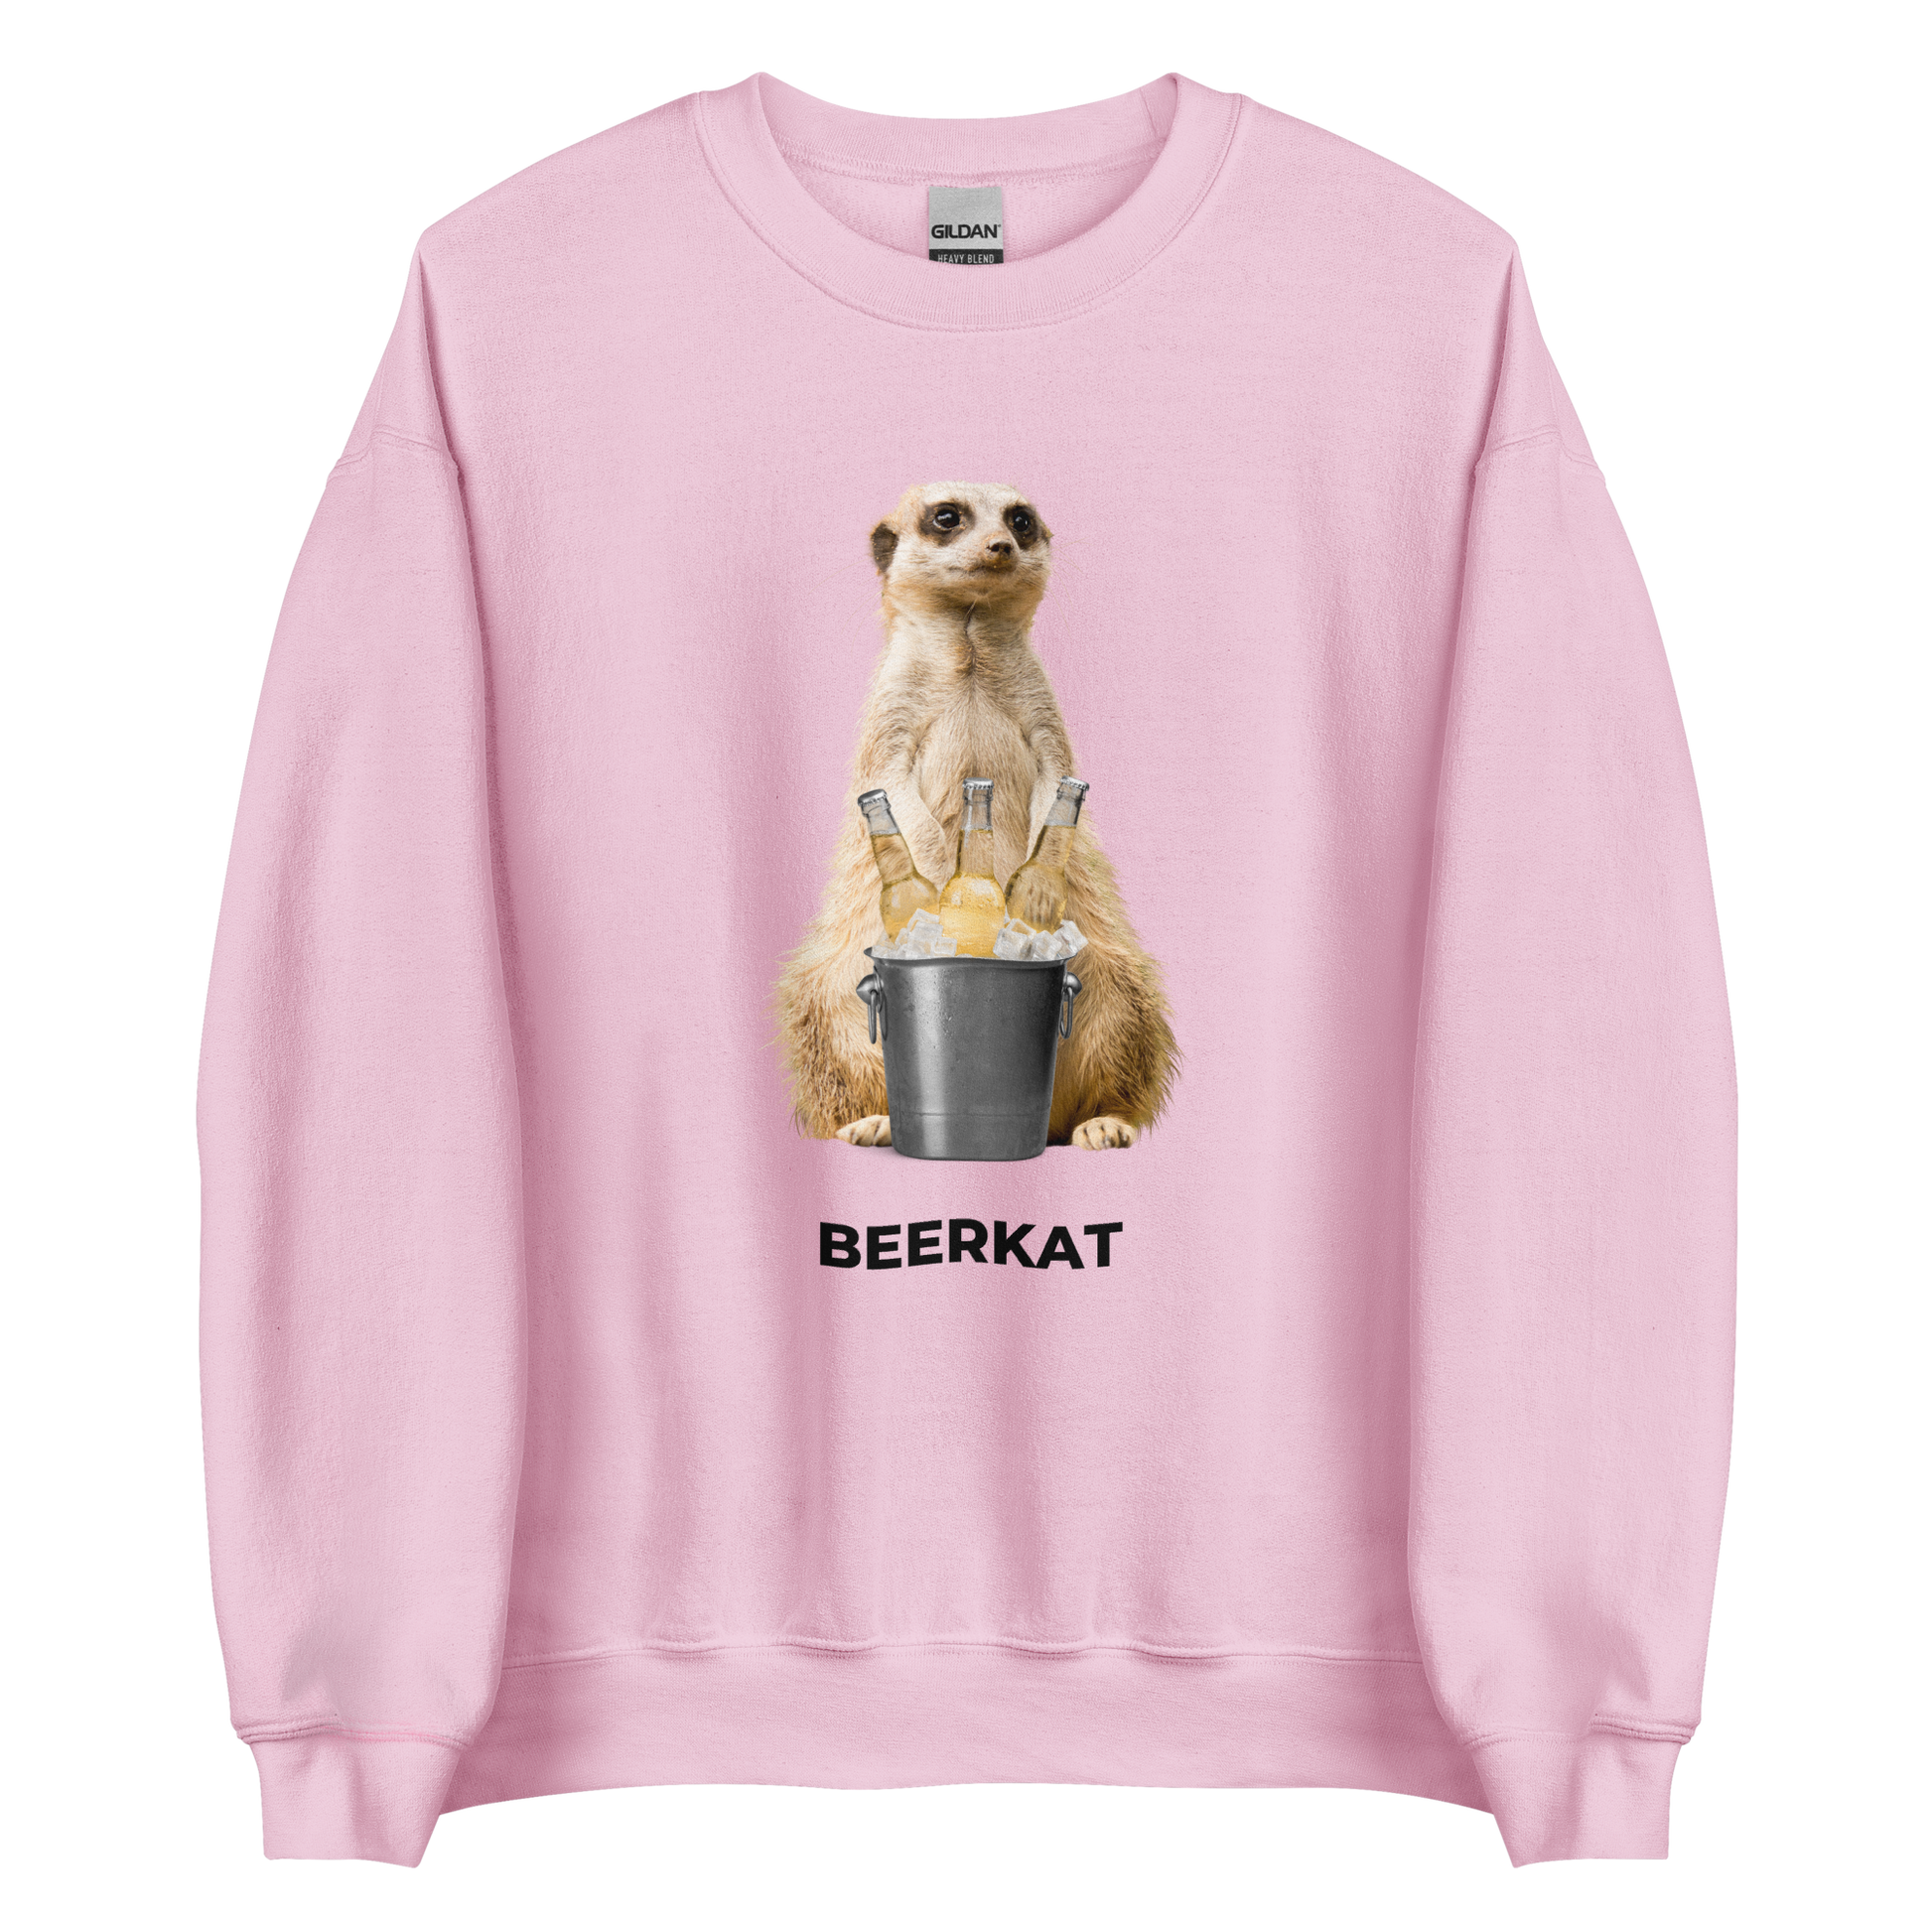 Light Pink Meerkat Sweatshirt featuring a hilarious Beerkat graphic on the chest - Funny Graphic Meerkat Sweatshirts - Boozy Fox